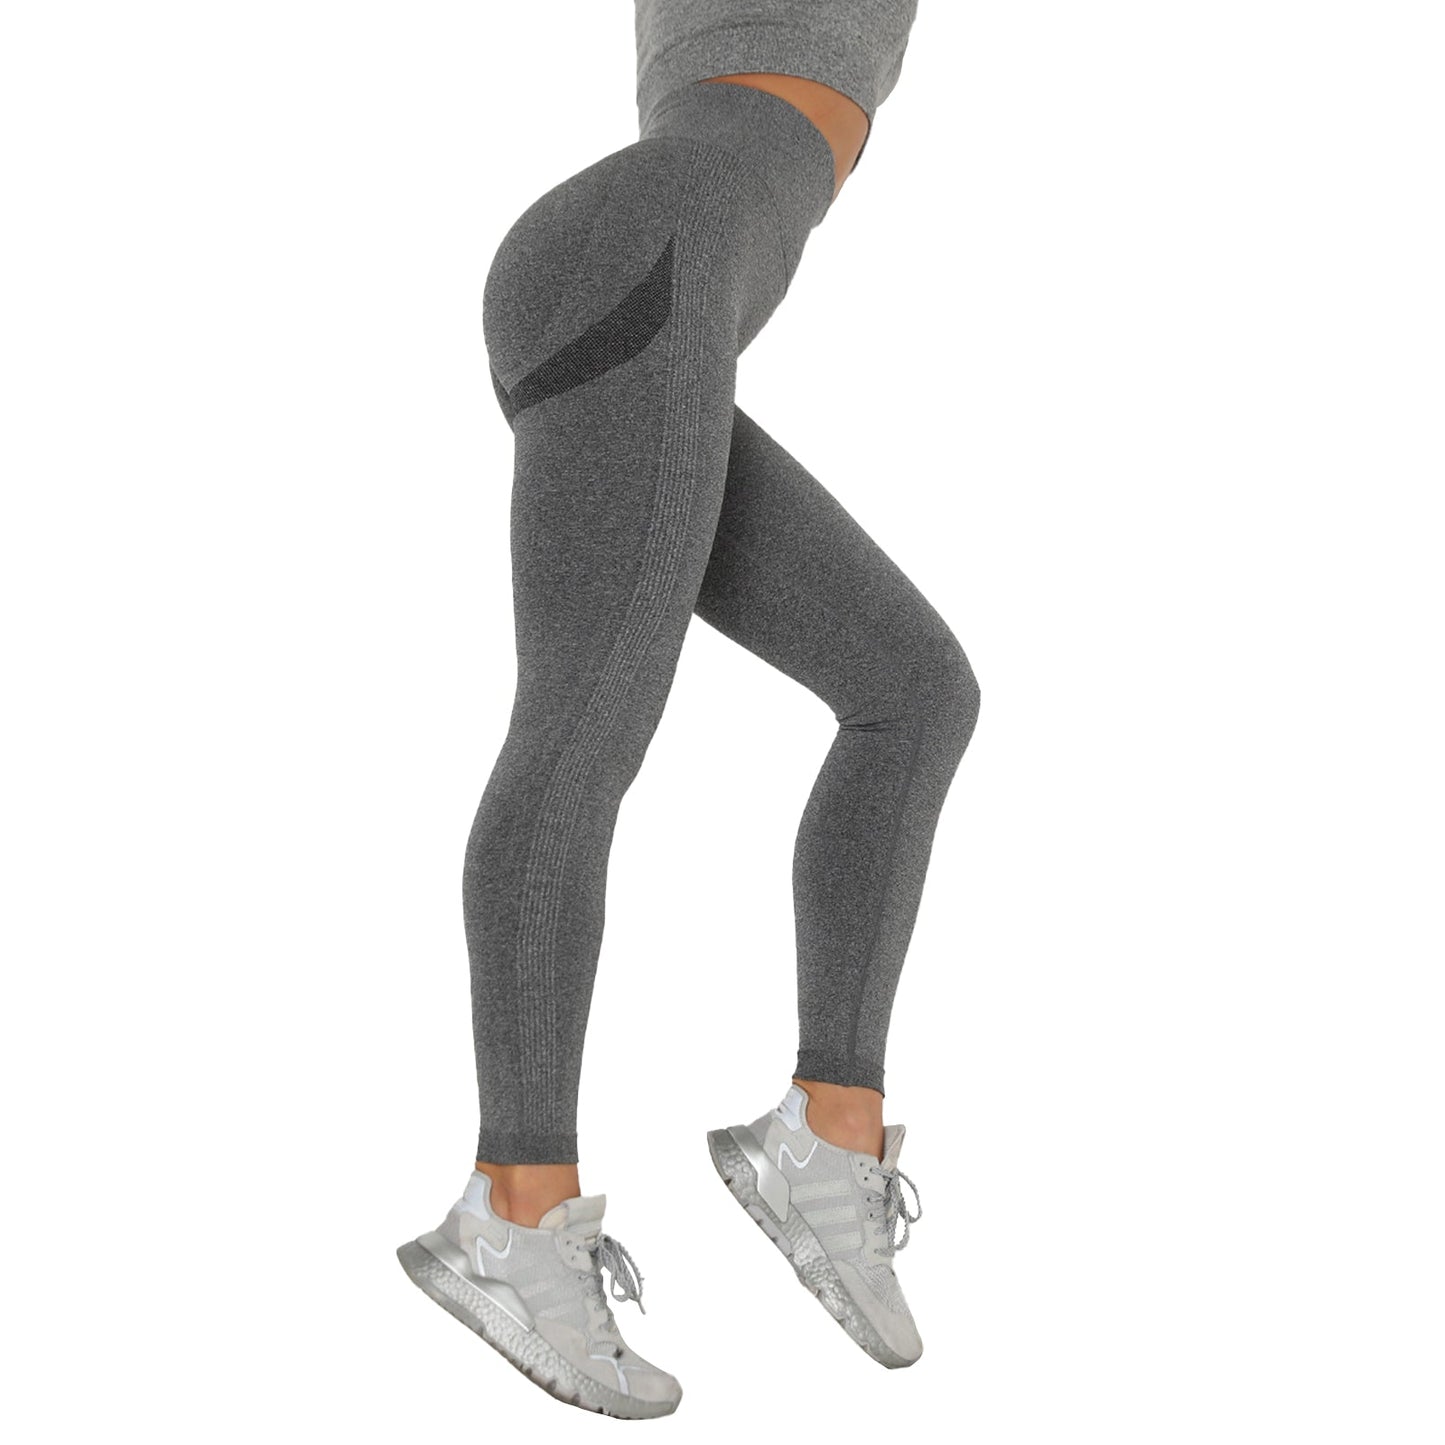 Bodychum Women's Butt Lifting Leggings High Waist Workout Yoga Pants